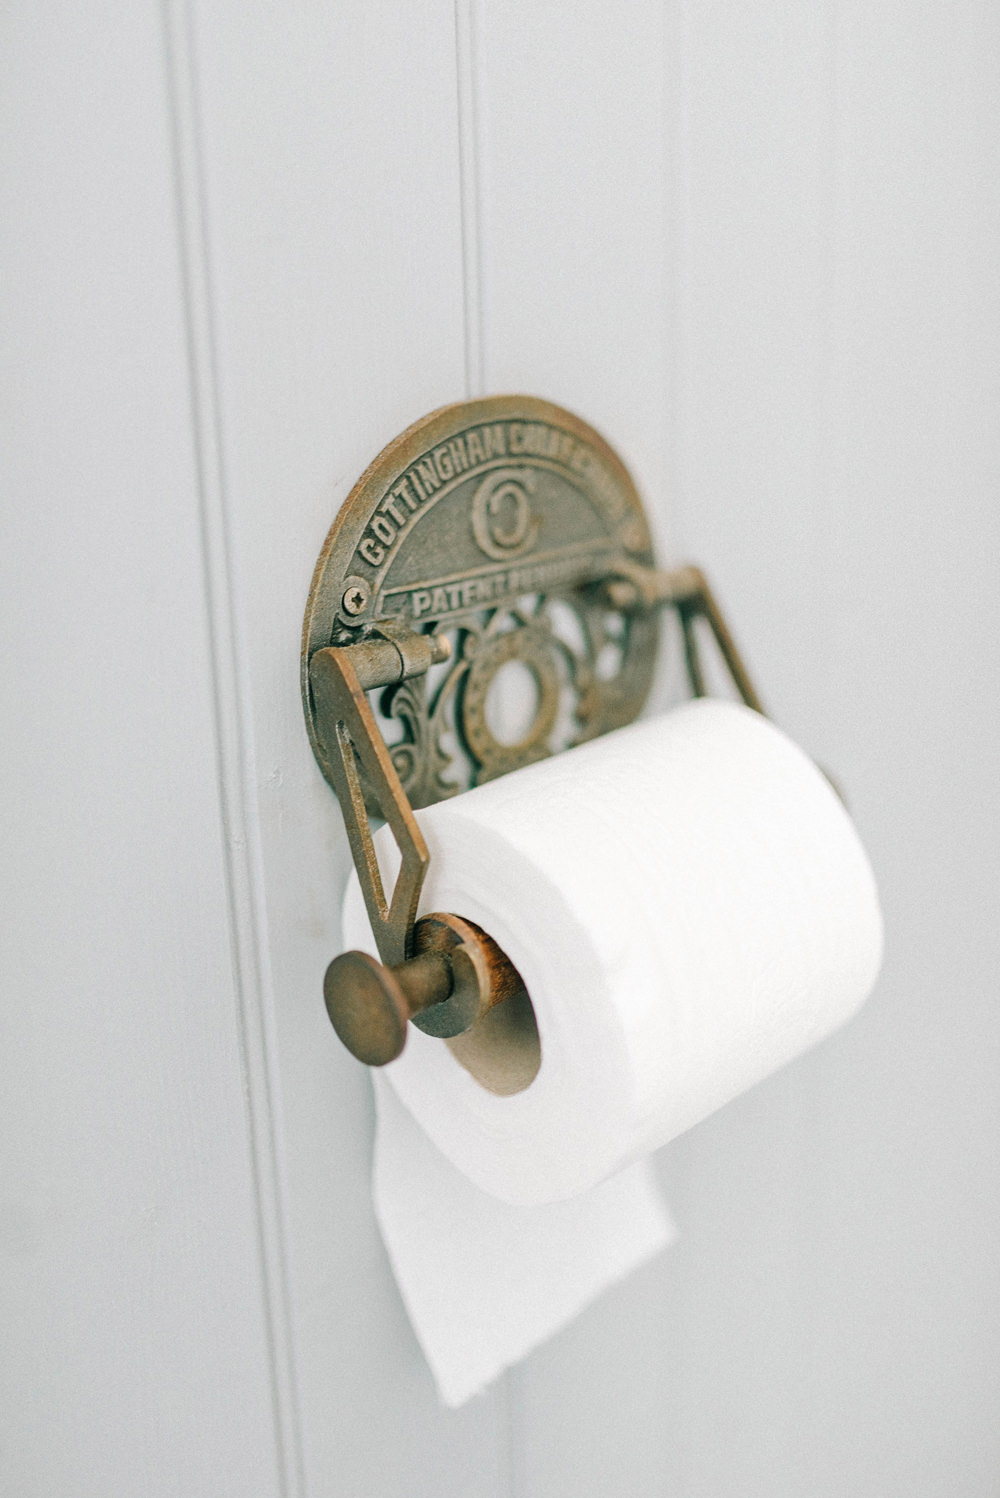 Vintage toilet roll holder